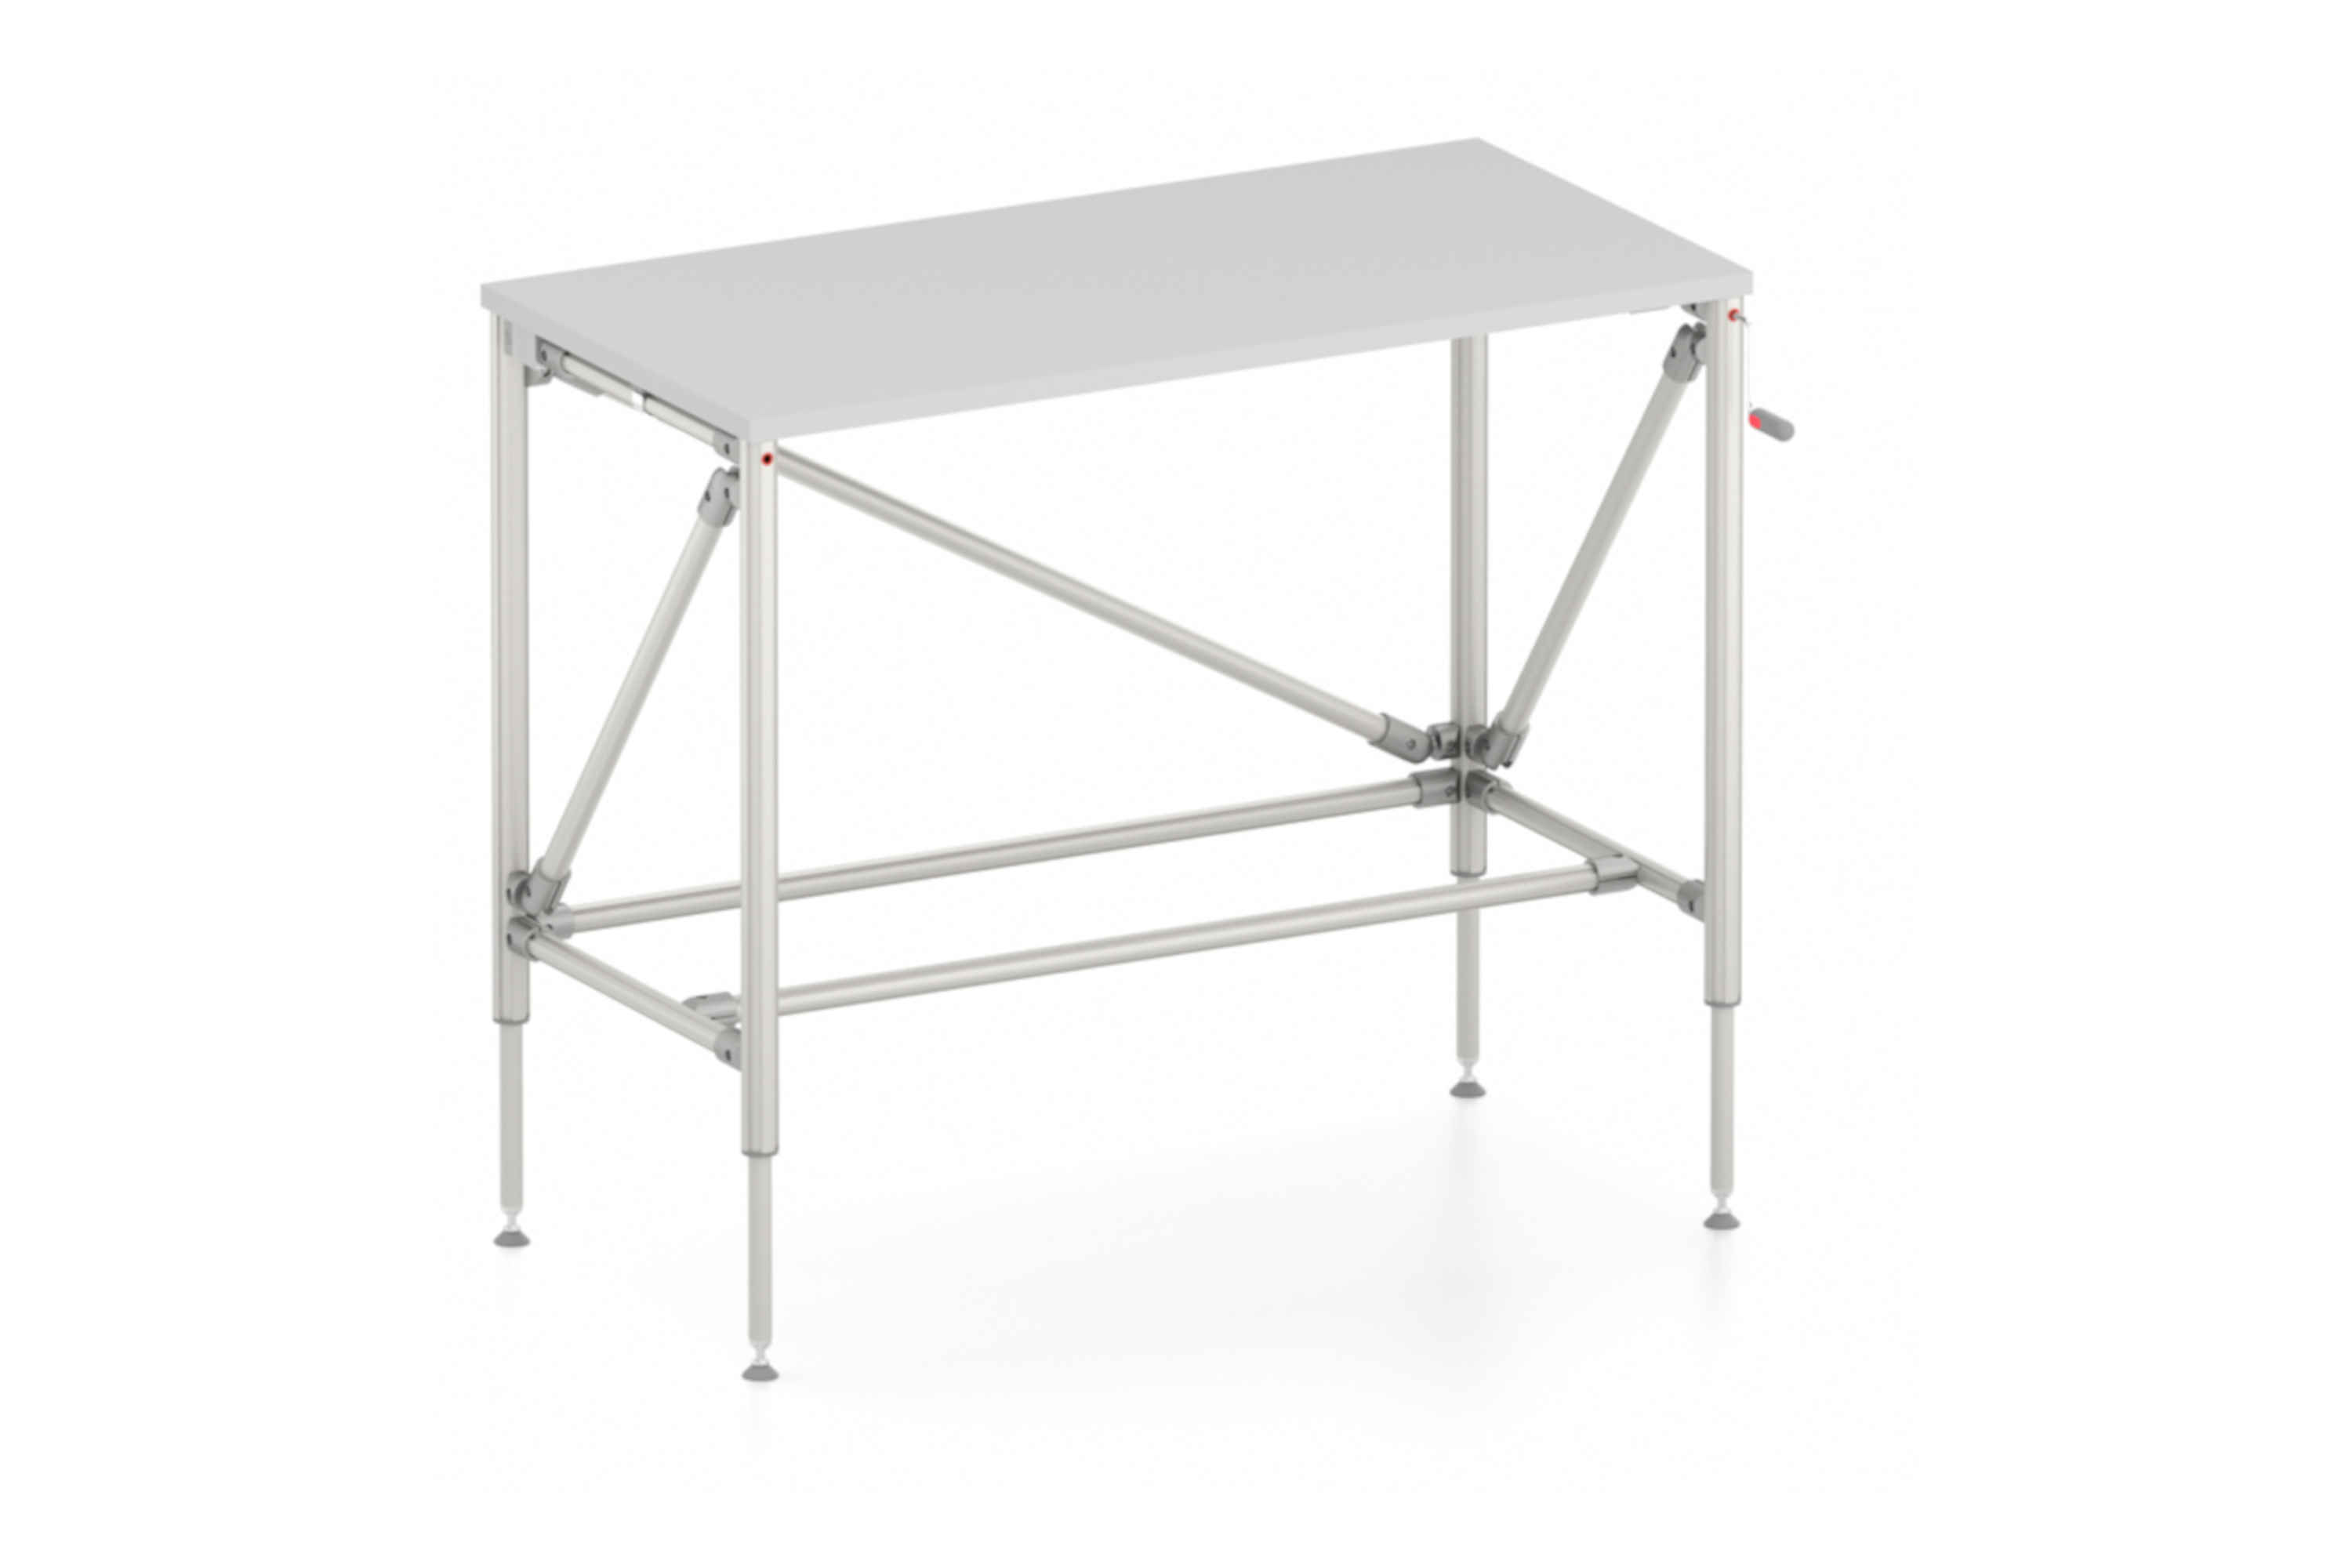 Mesa de altura regulable manualmente Table, Economy Lean D40/D30 K - modelo básico